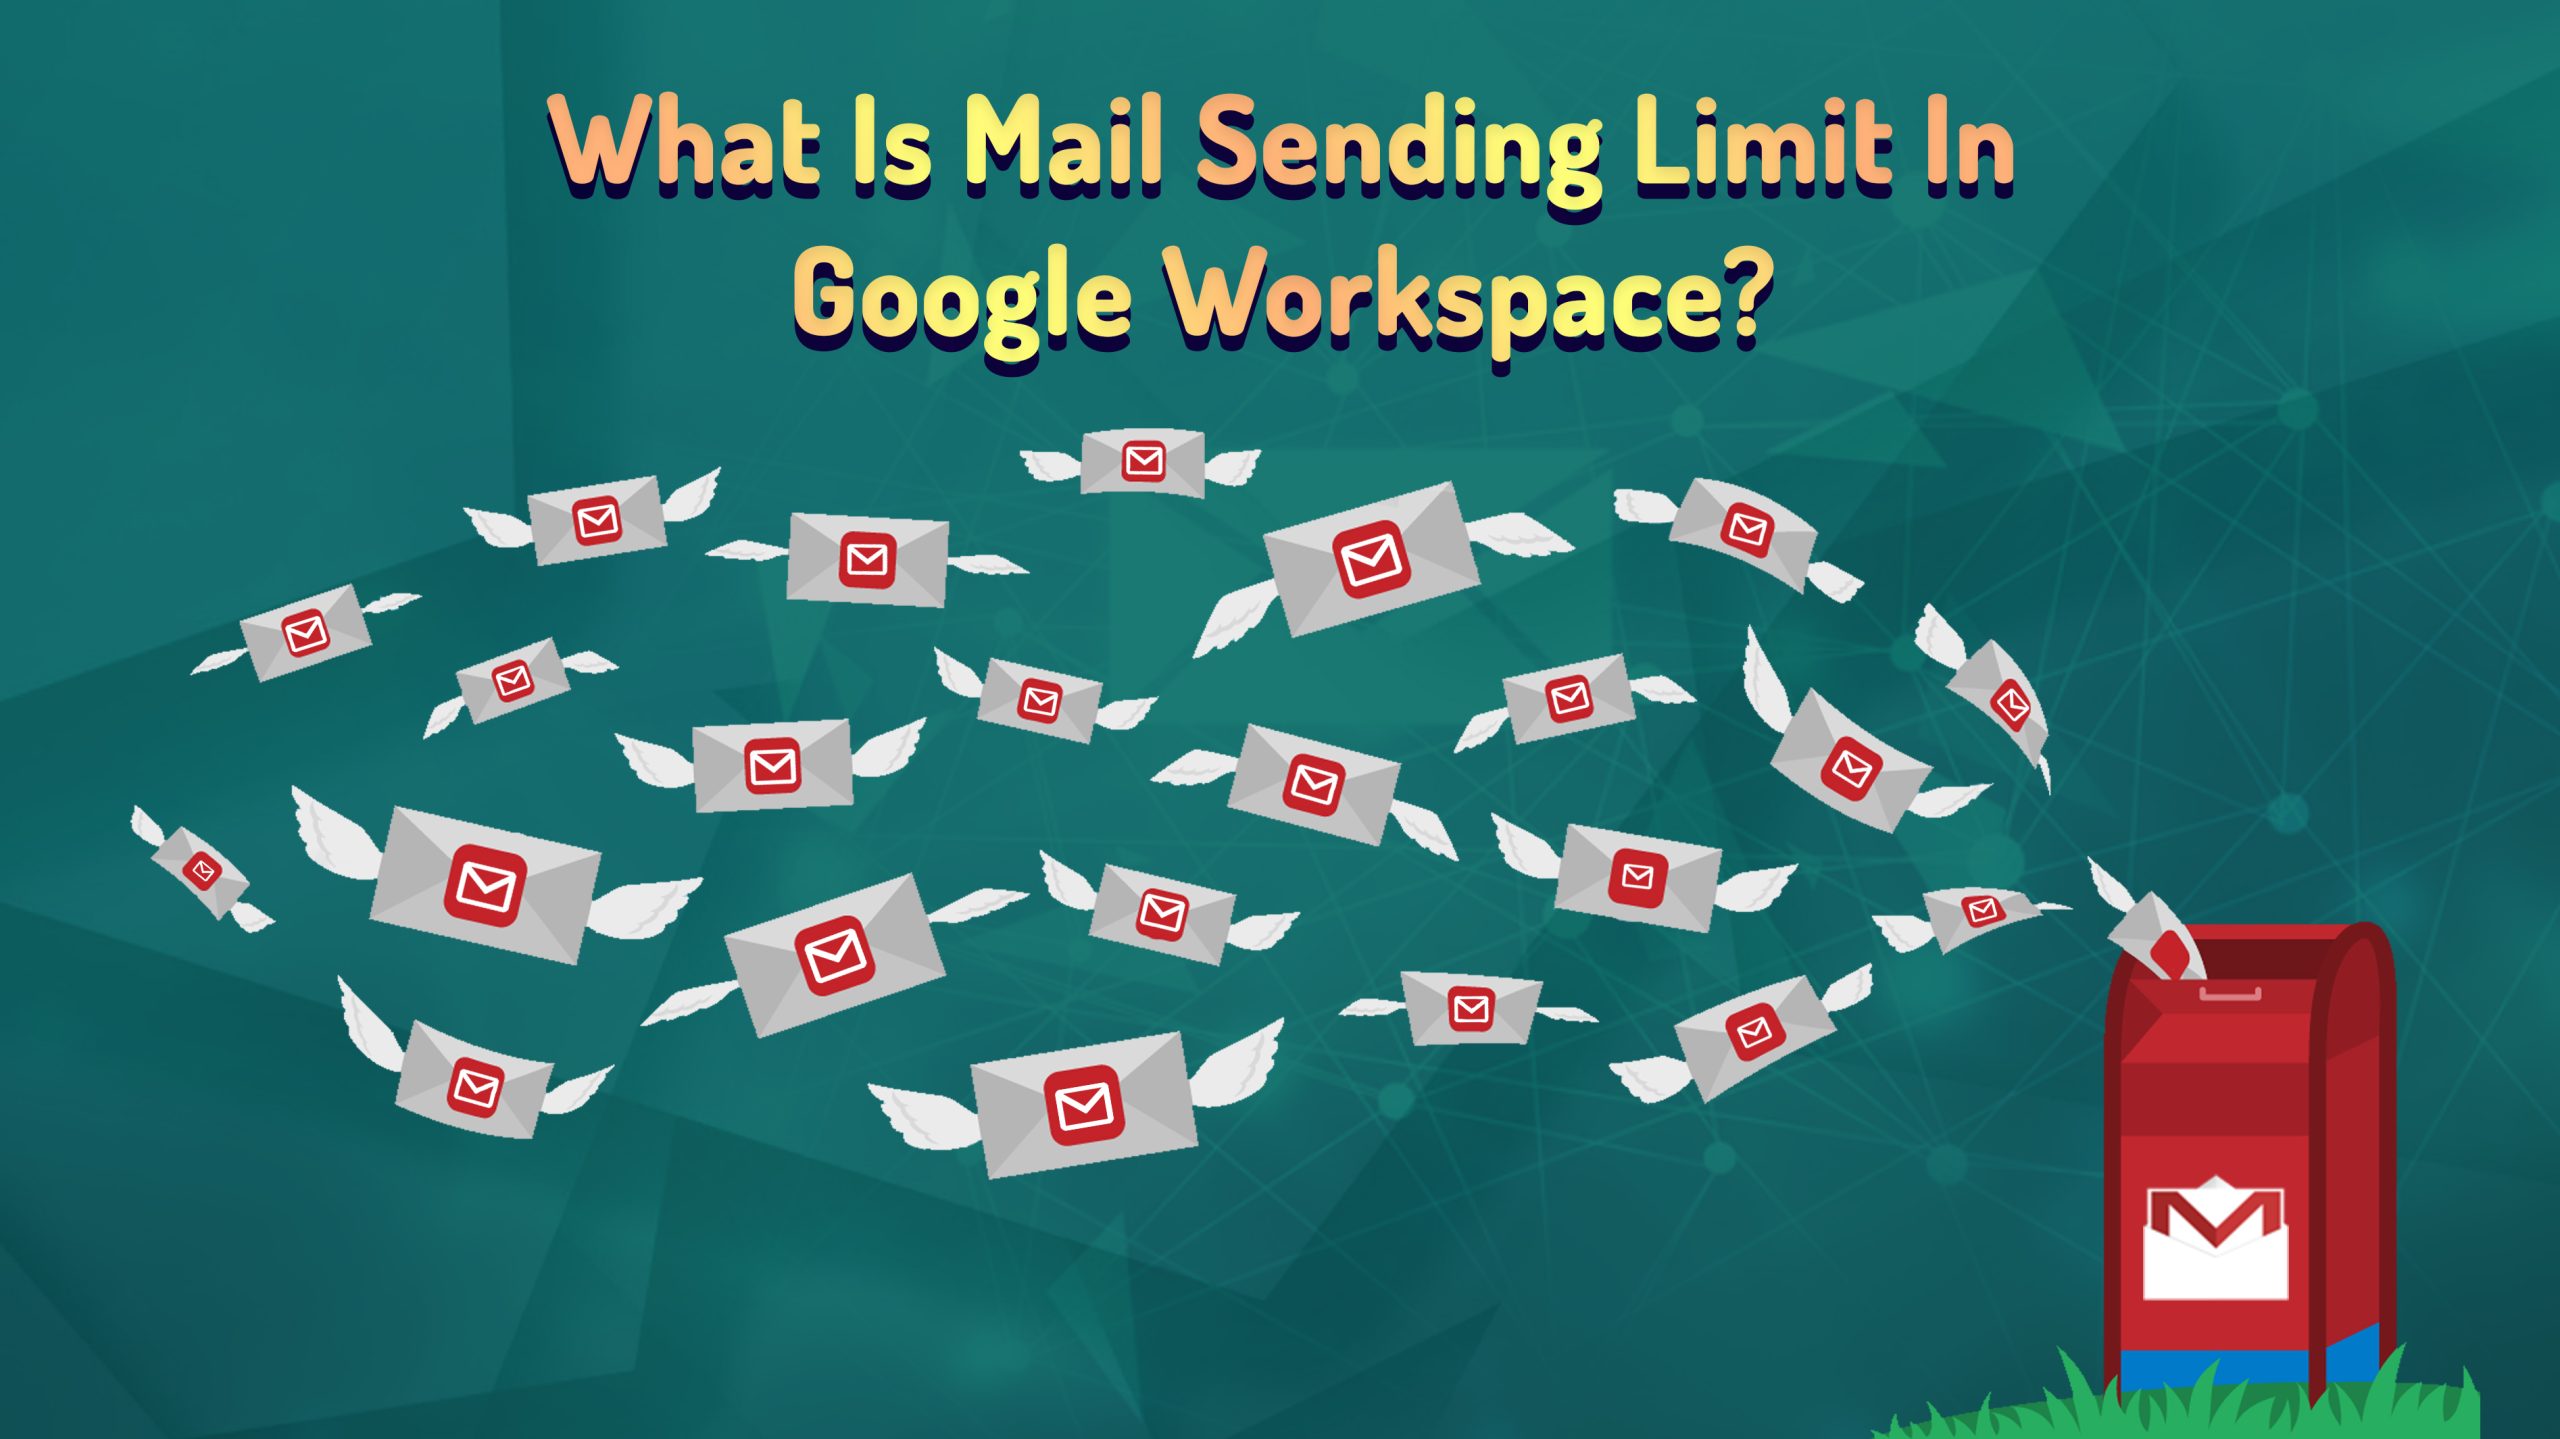 Mail Sending Limit